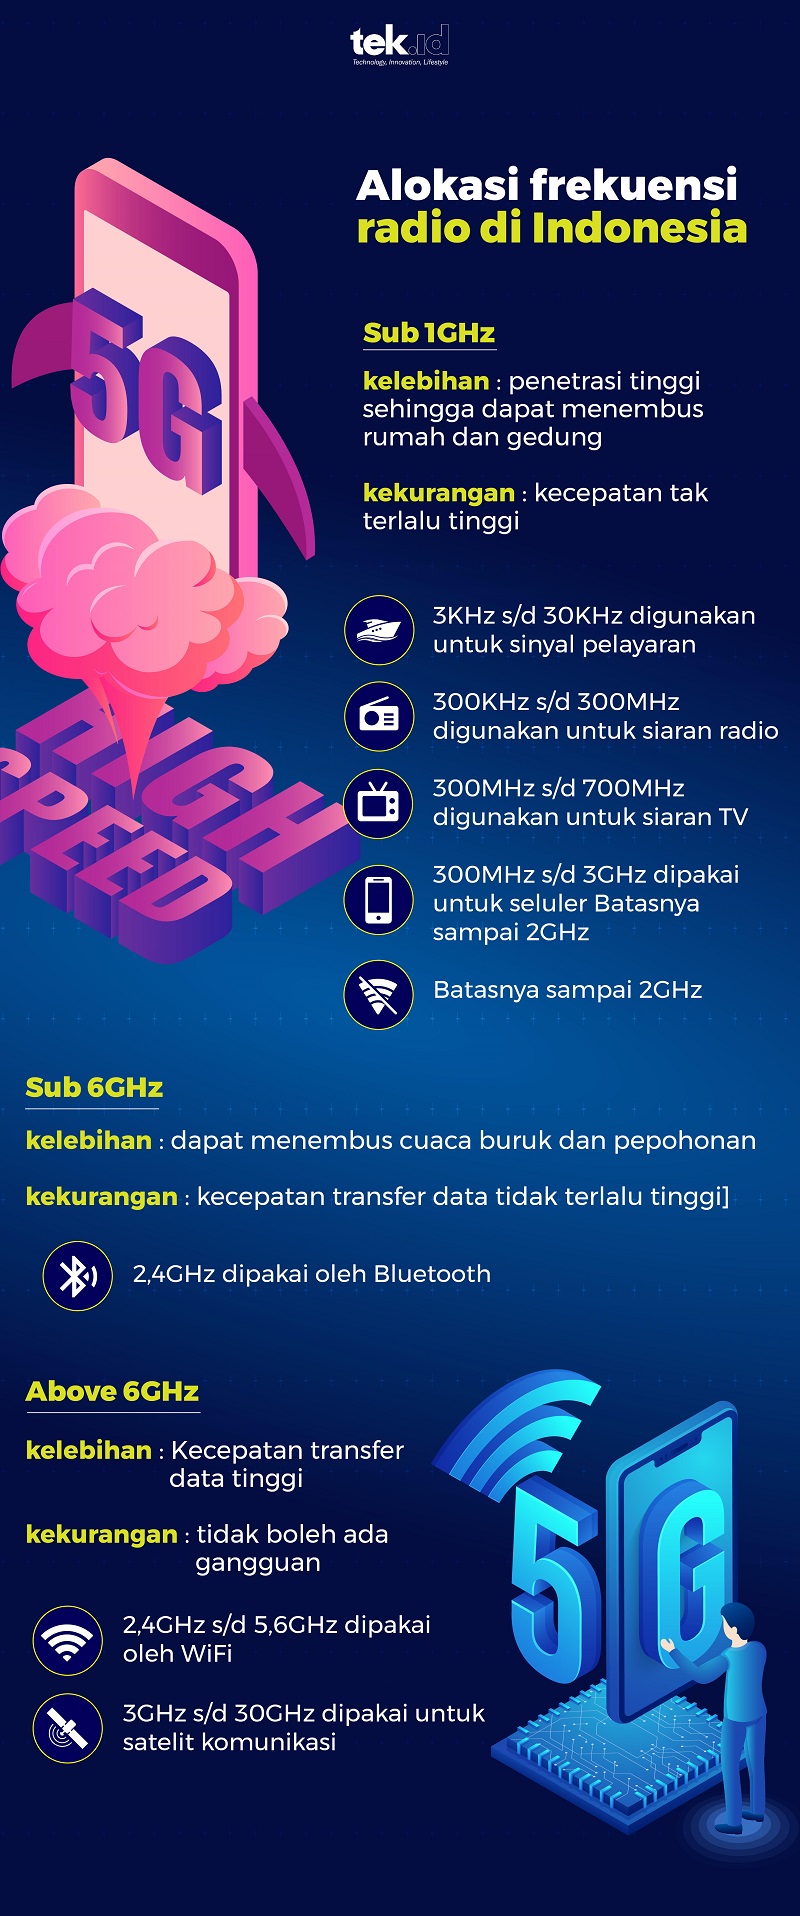 Alokasi frekuensi radio di Indonesia (2019)